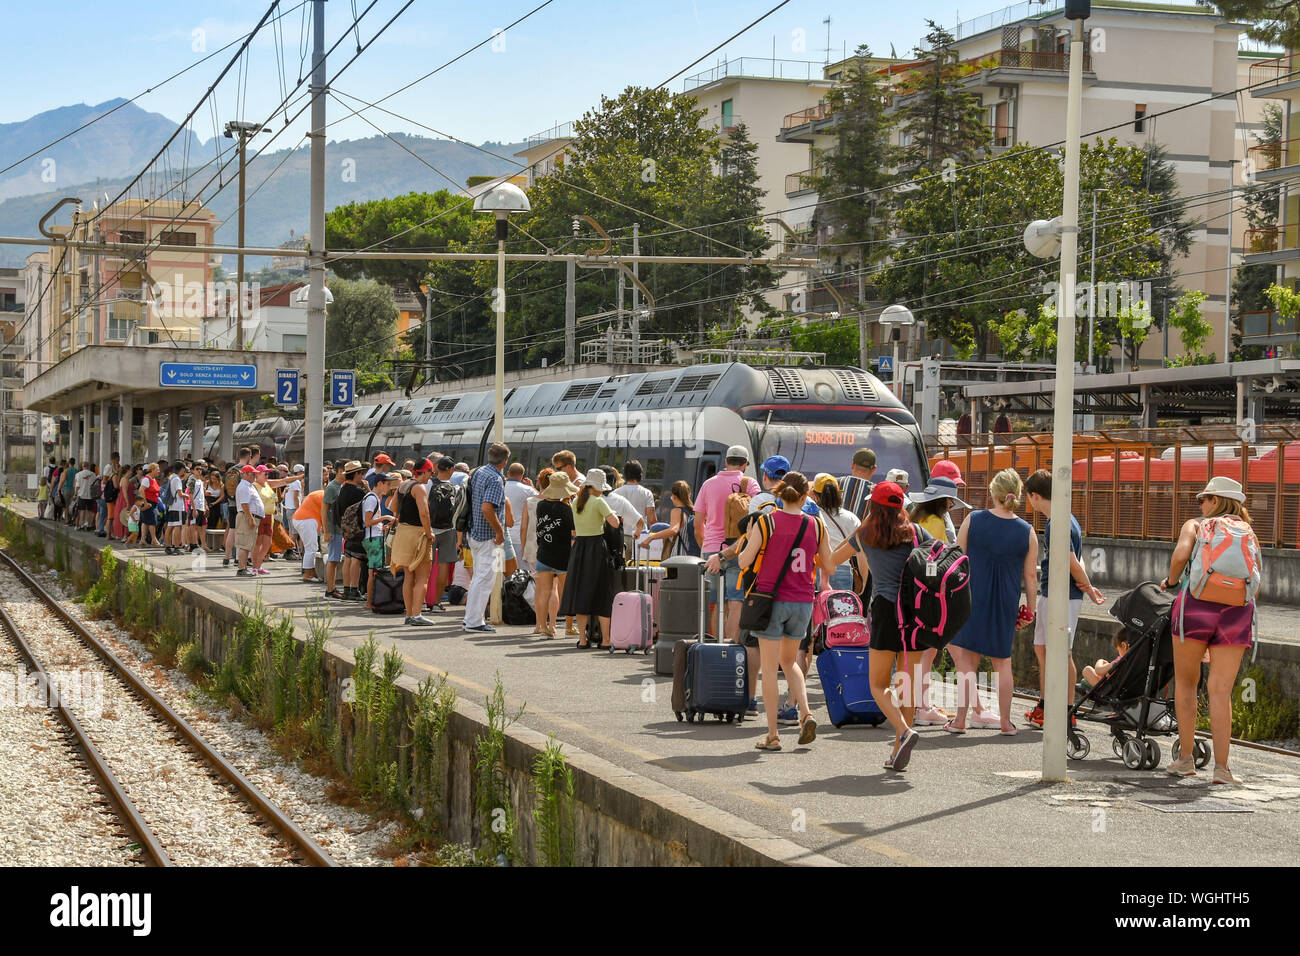 SORRENTO, ITALIEN - AUGUST 2019: Masse der Leute auf einer Plattform als am Bahnhof Sorrento Bahnhof ankommt. Stockfoto